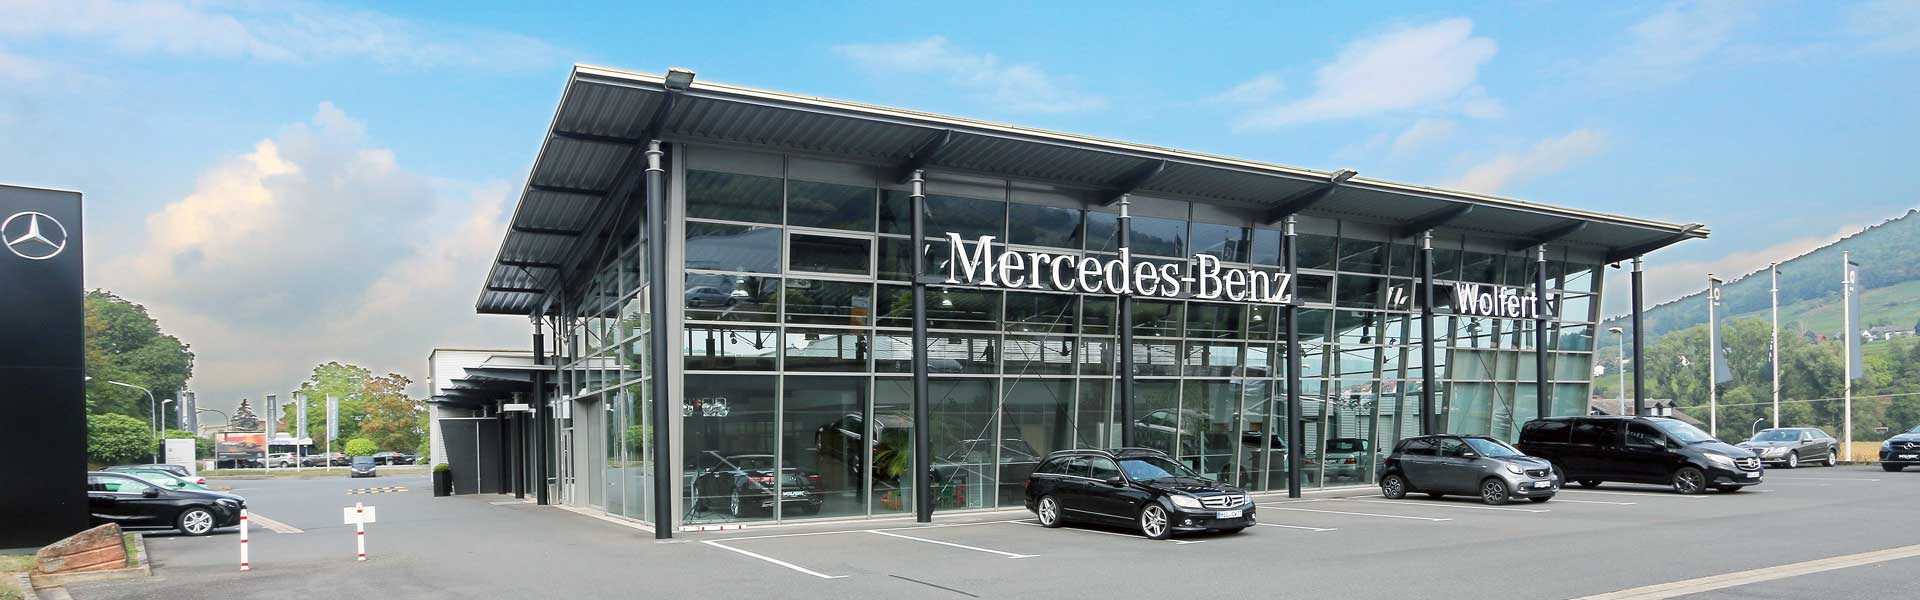 Mercedes Benz – Autohaus Wolfert